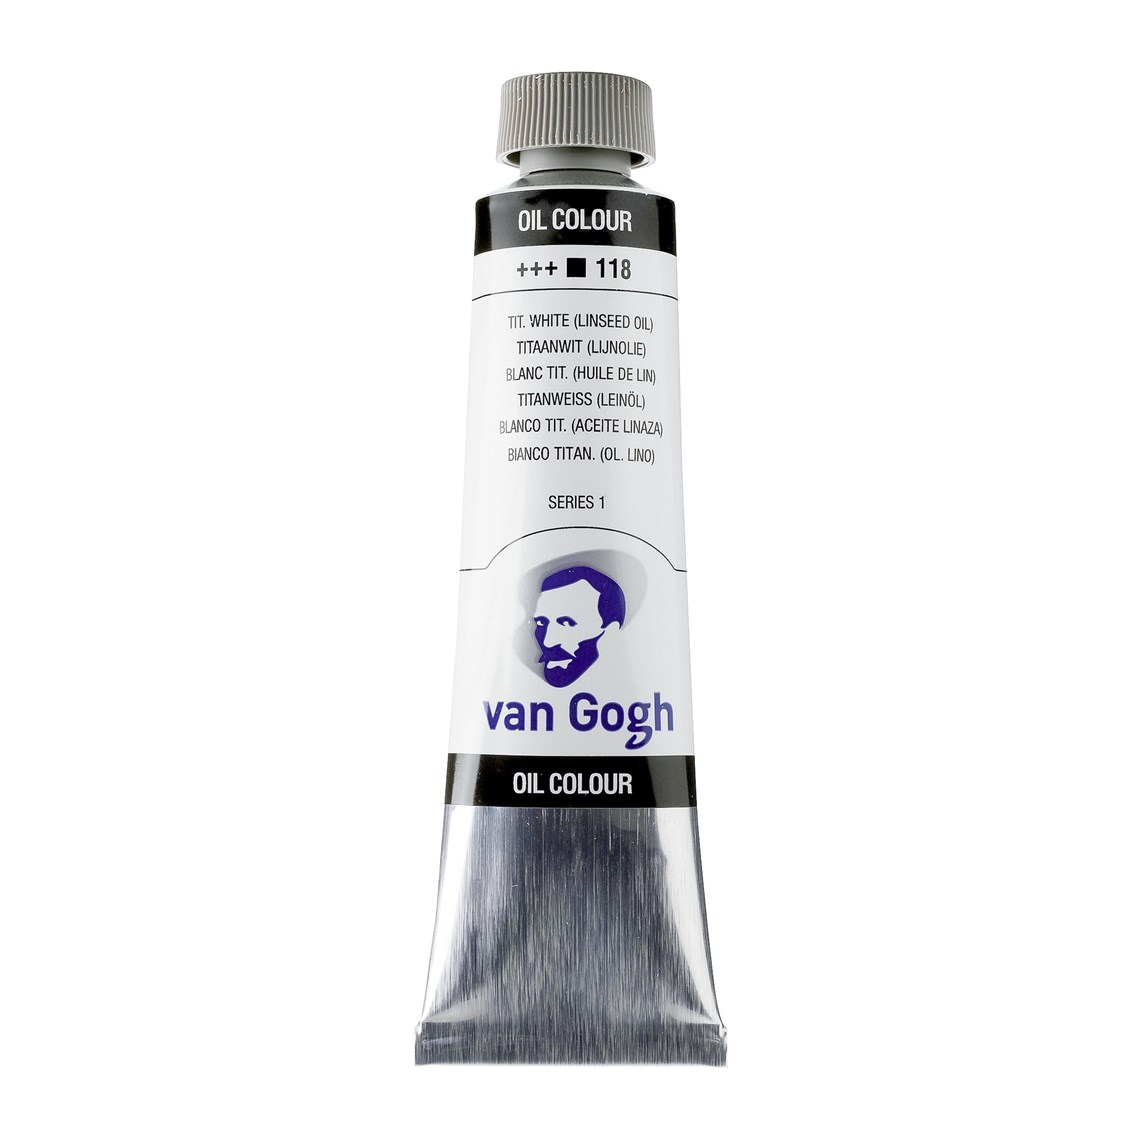 Oleo Van Gogh blanco de titanio (Linaza) tubo 40ml